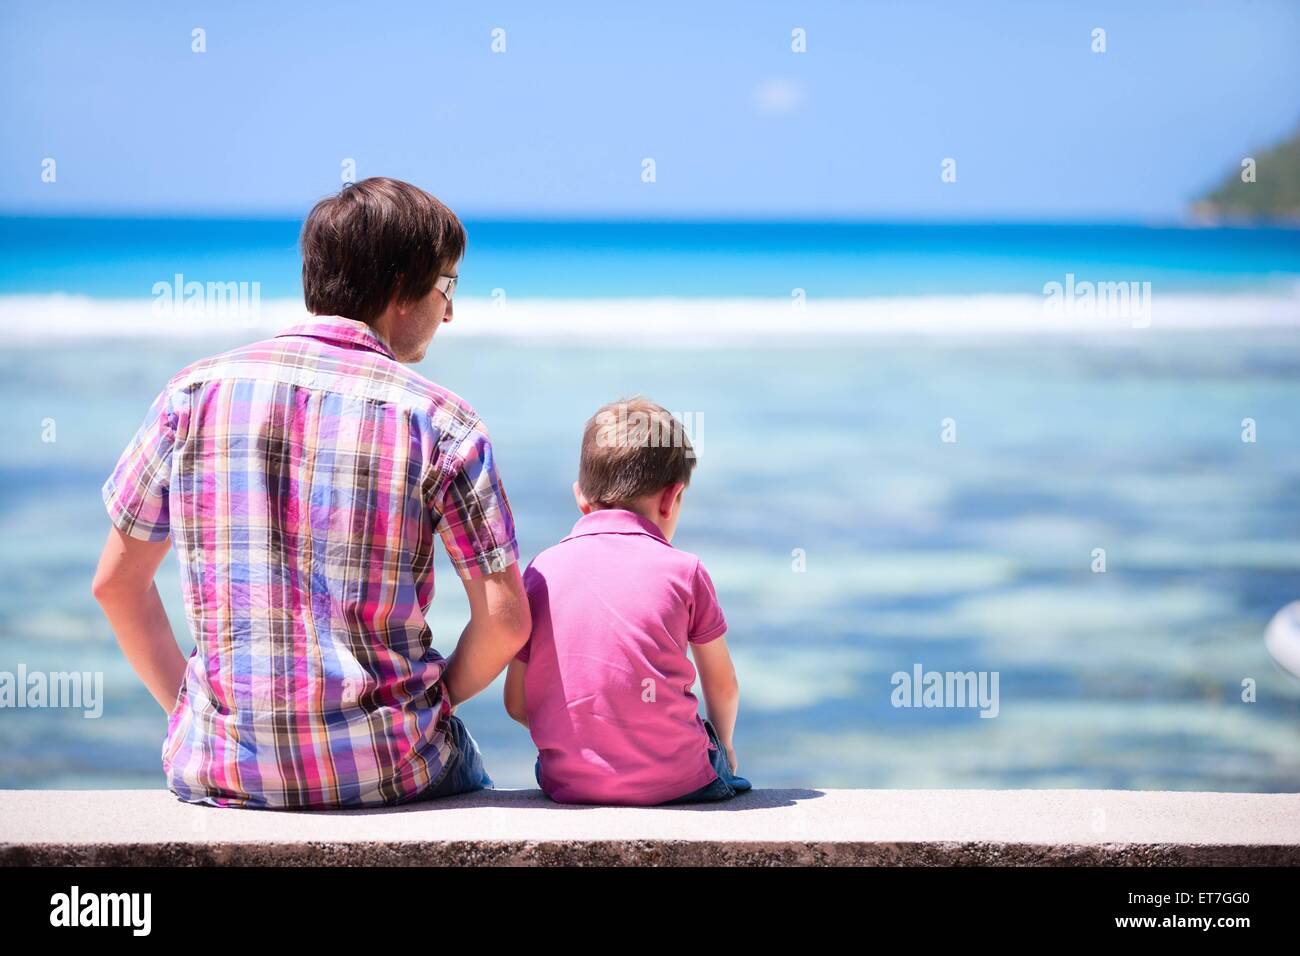 Vater sitzt mit seinem Sohn auf einer Mauer und blickt auf das Meer, Rueckansicht | father with his son sitting on wall and view Stock Photo